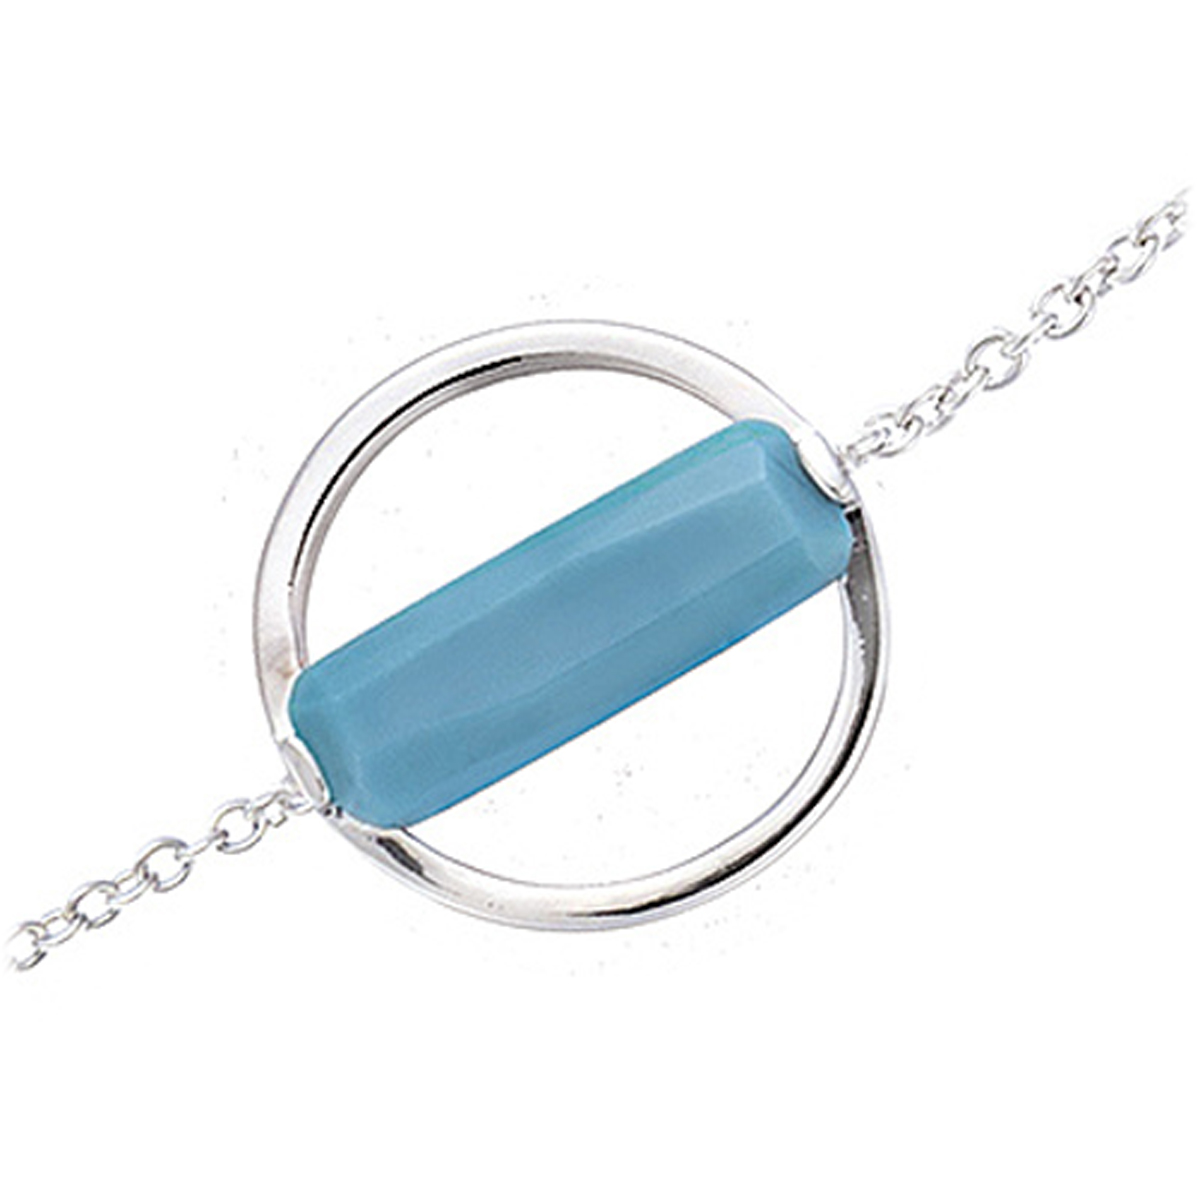 Bracelet Argent \'Boho\' turquoise argenté (rhodié) - 16 mm - [P8008]